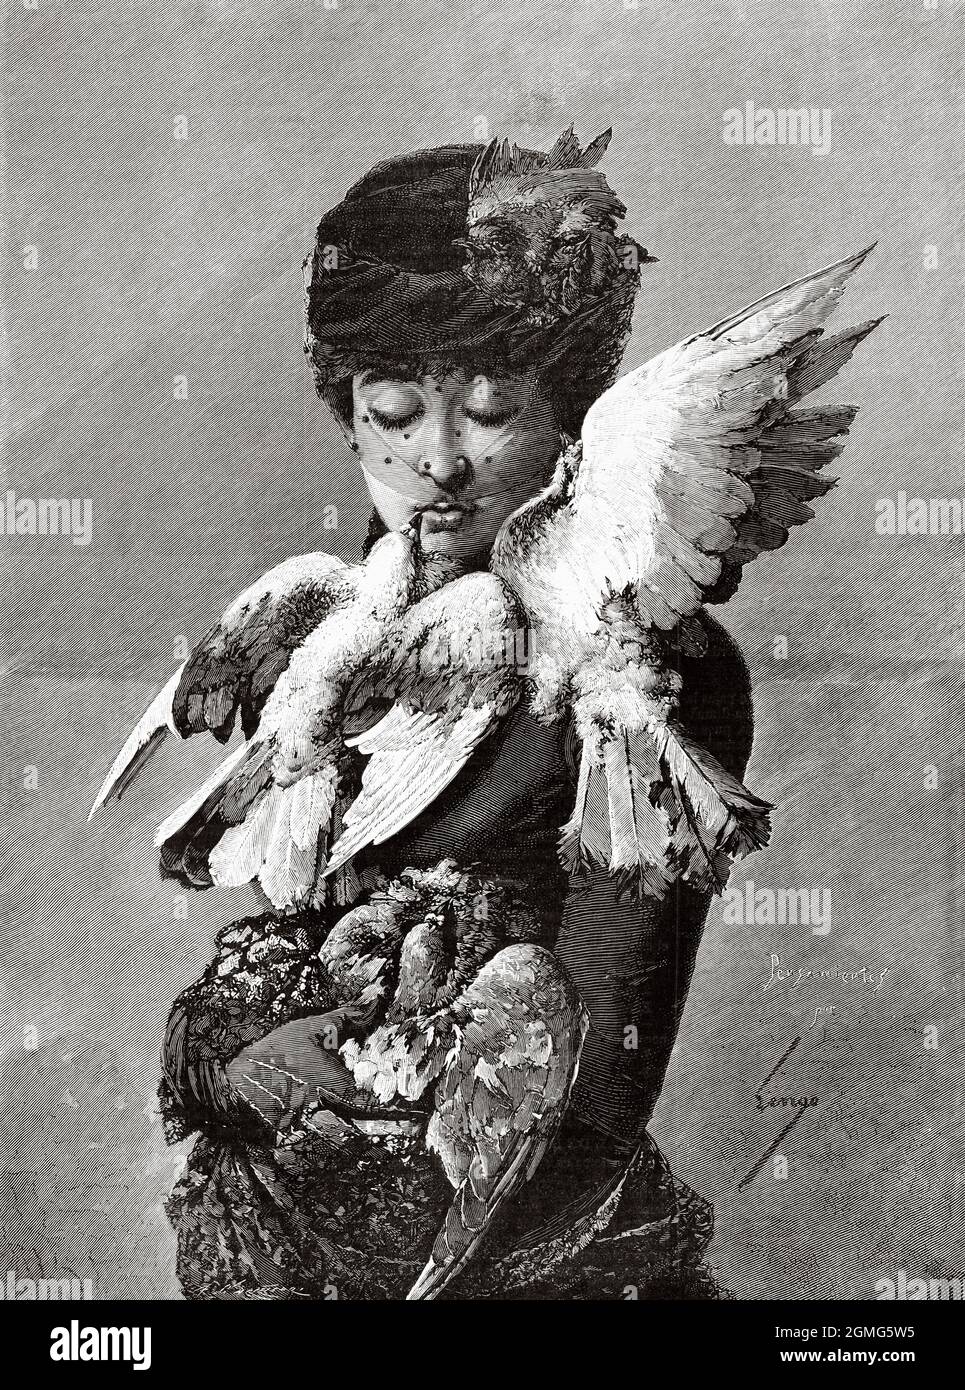 Portrait d'une belle jeune femme avec des pigeons, peinture par Horacio Lengo Martínez (1838-1890) était un peintre espagnol de l'école de peinture de Malaga. Ancienne illustration gravée du XIXe siècle de la Ilustración Artística 1882 Banque D'Images